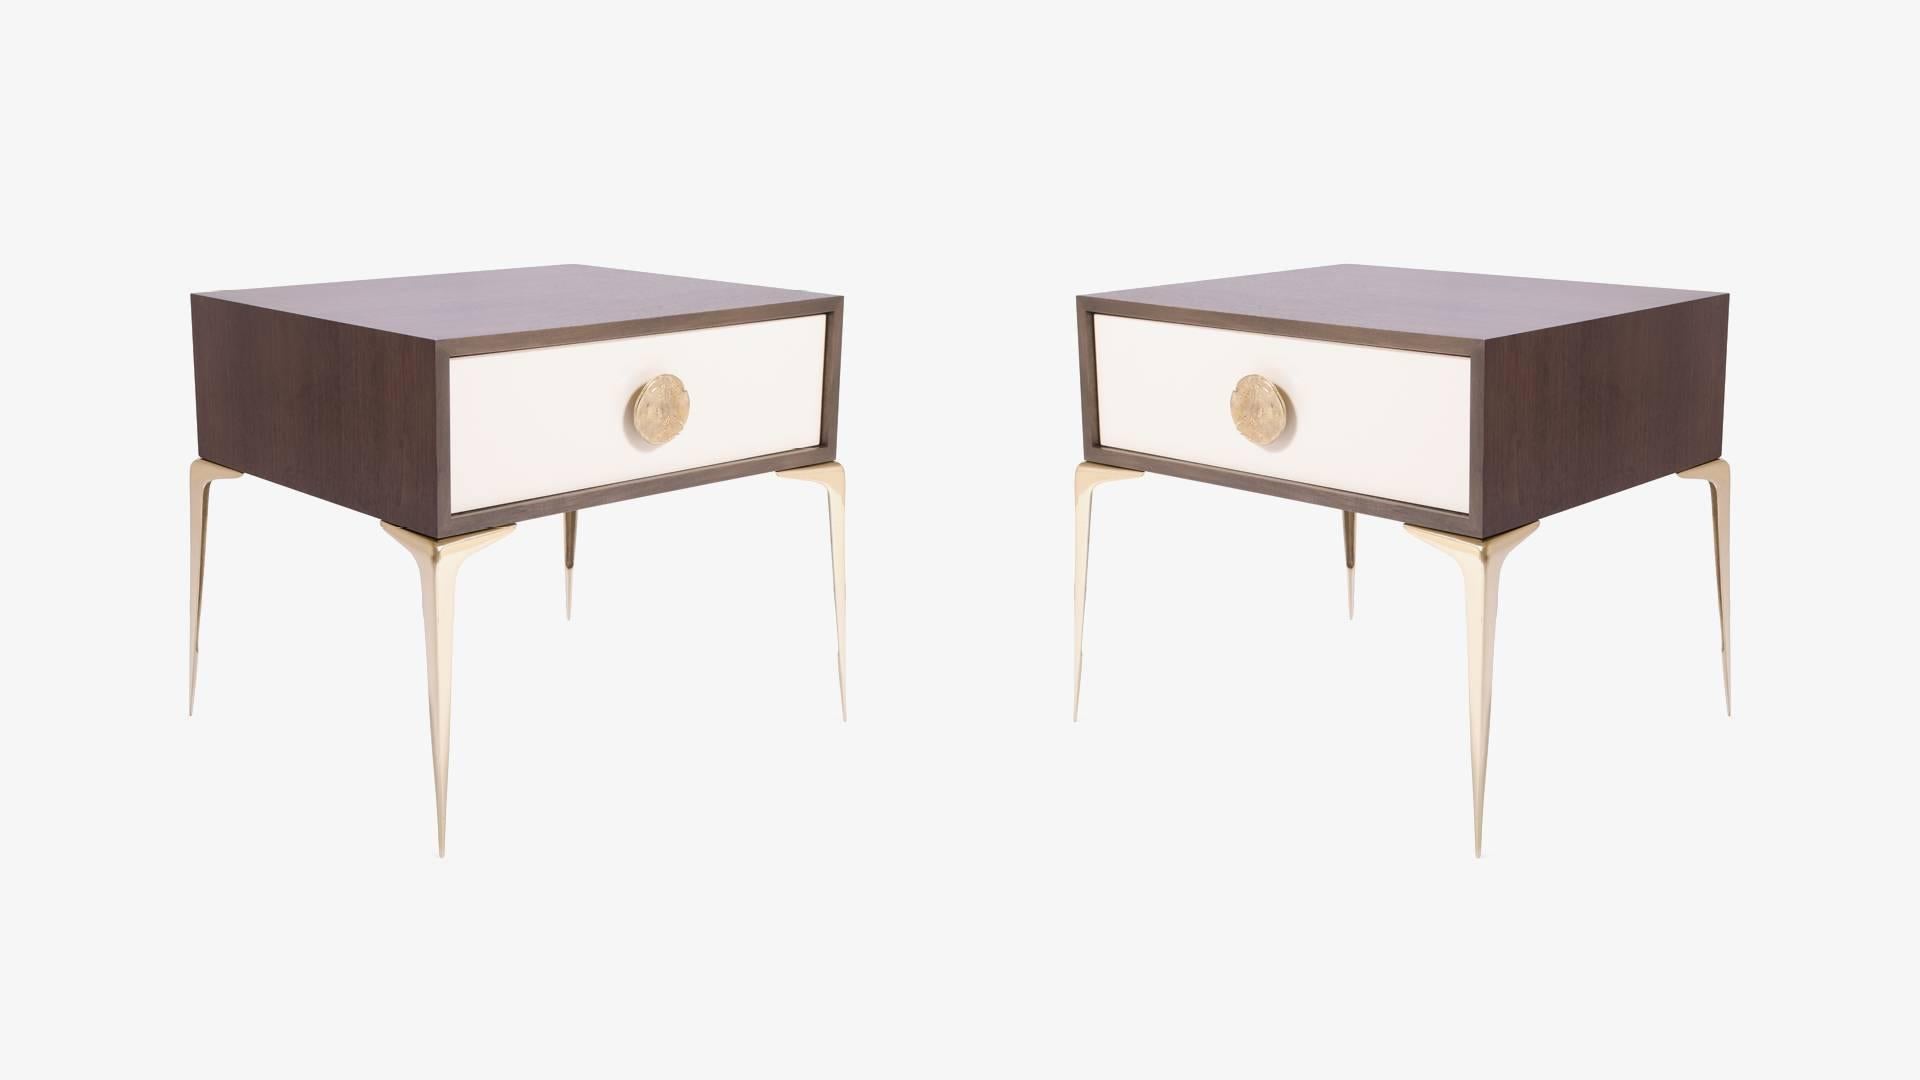 Der Colette Nachttisch, gekonnt ausgeführtes Tischlerhandwerk mit polierten Messingbeschlägen. Colette wurde mit den zarten Proportionen des Mid-Century entworfen und zelebriert eine Design-Epoche, die auch heute noch so beliebt ist.  

Die